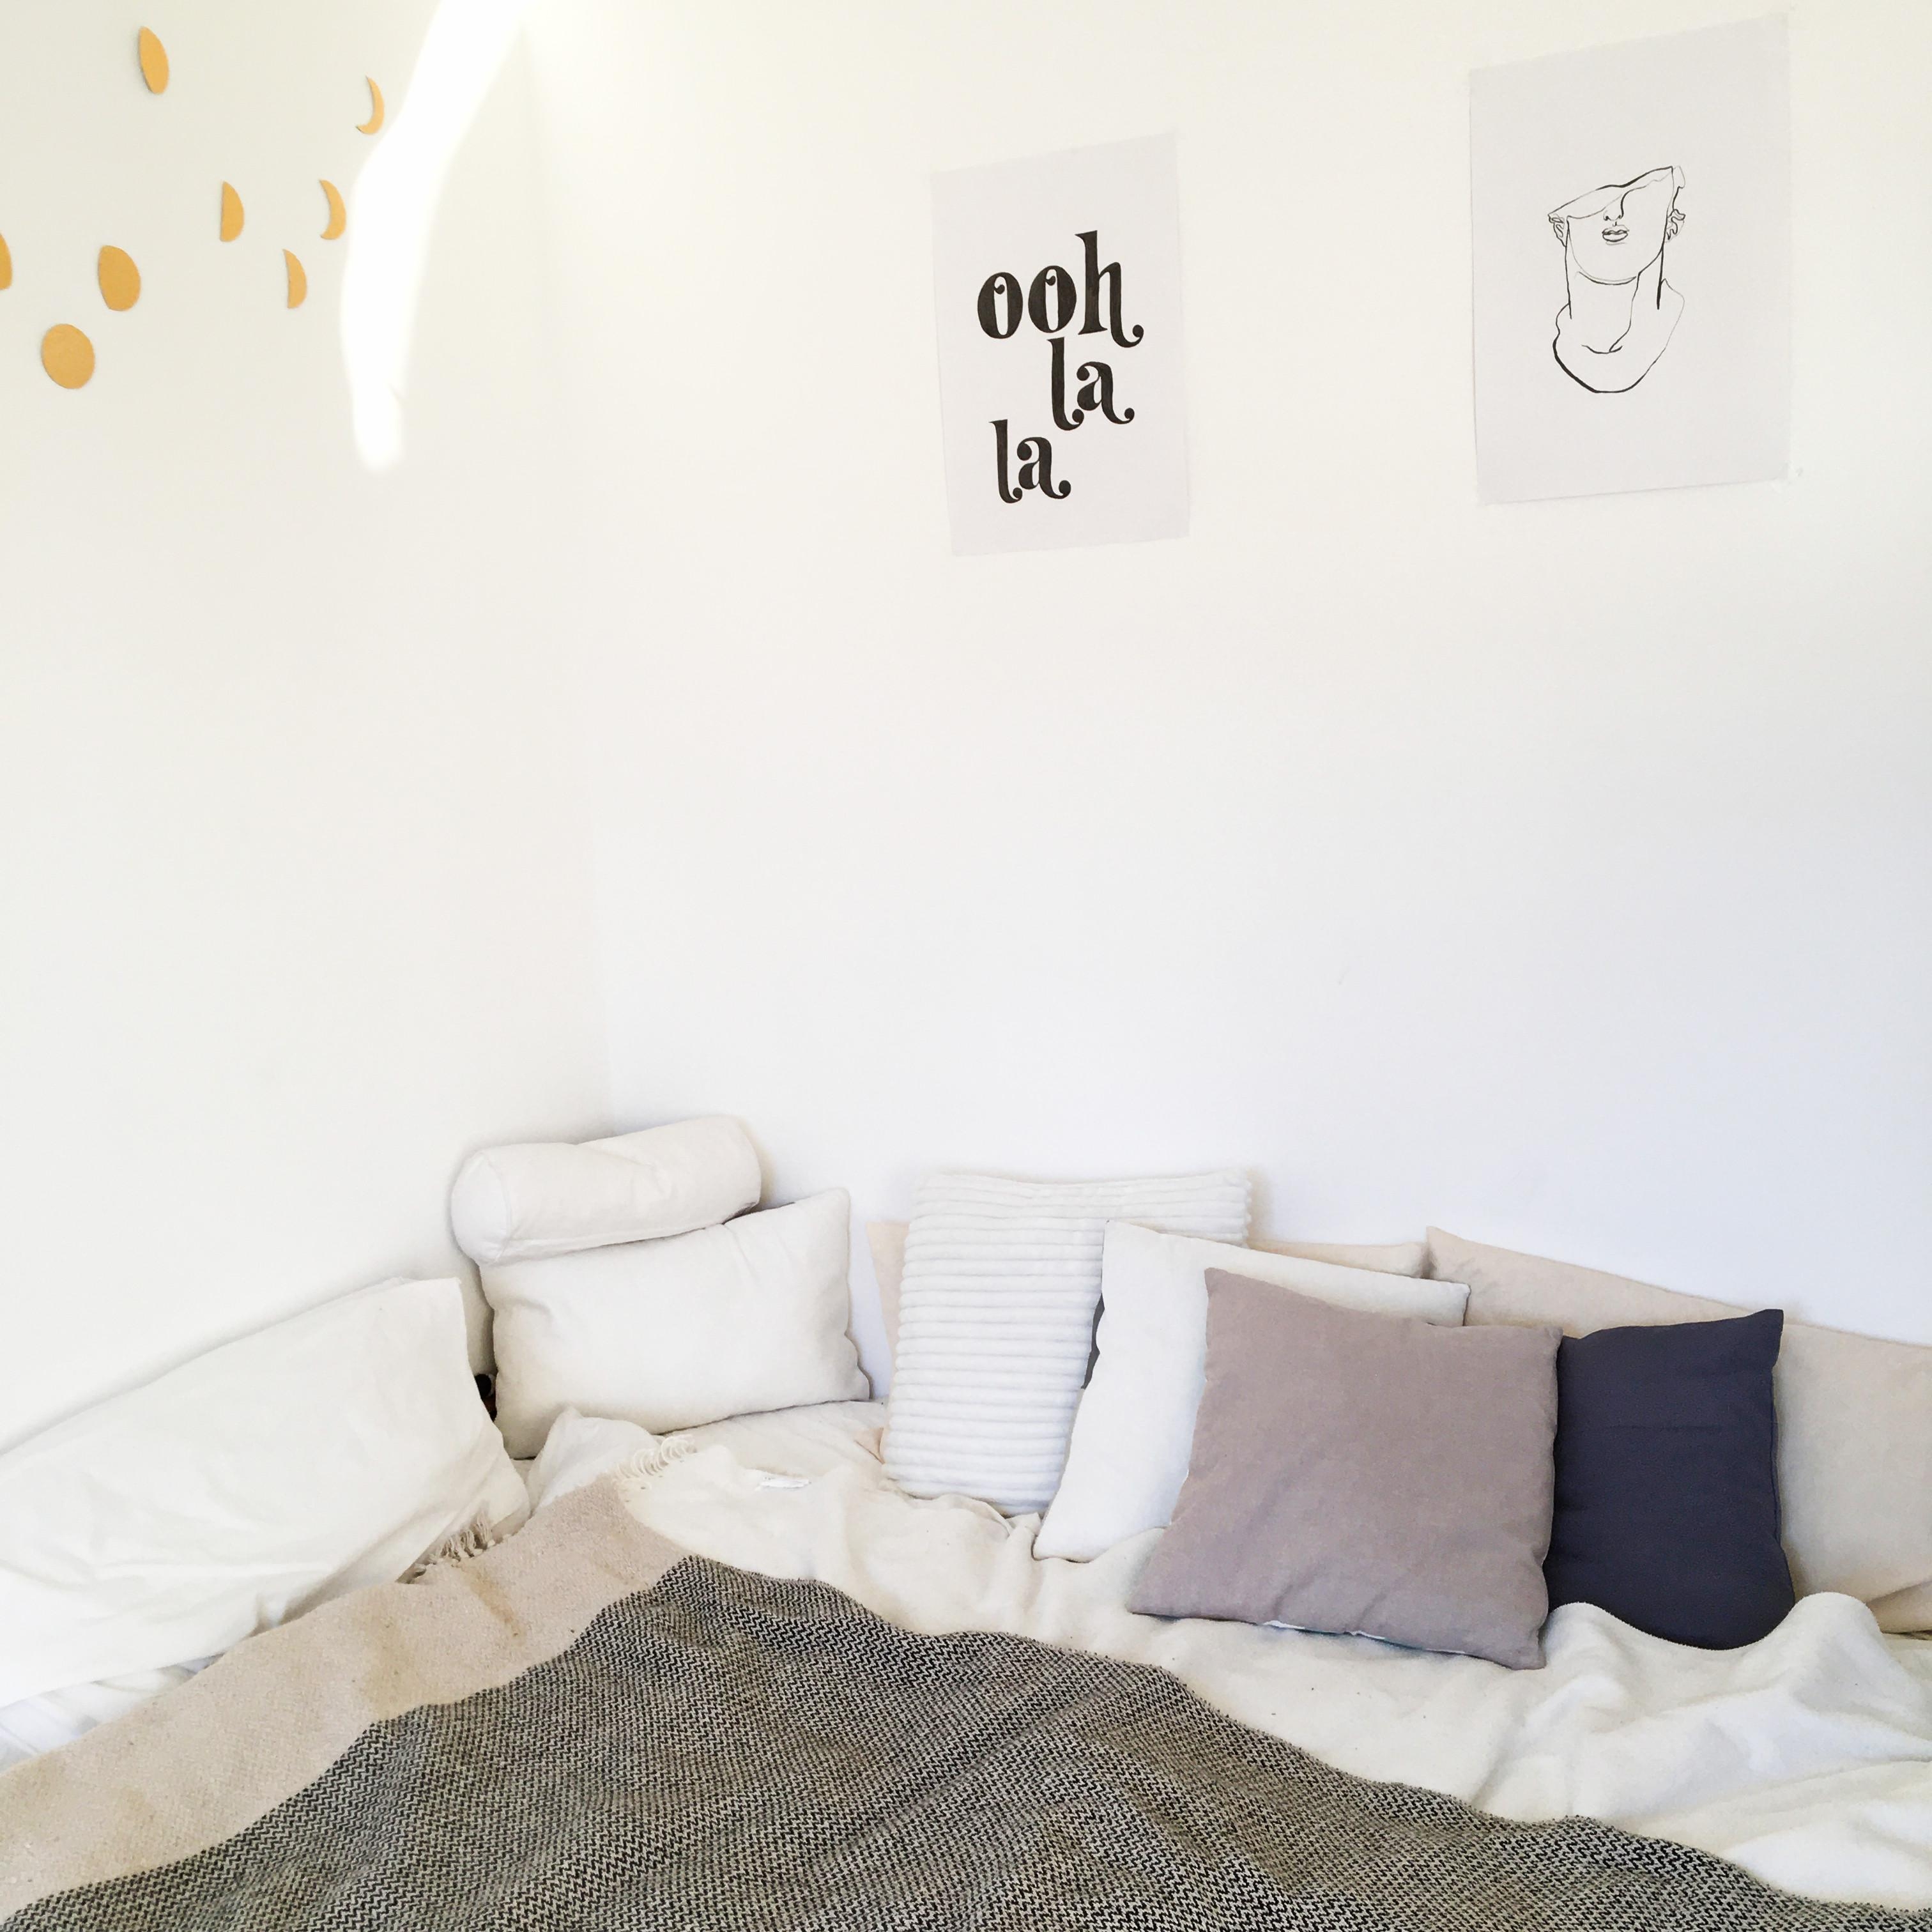 Meine cozy Ecke
#bed #bedarea #cozy #bedgoals #diy #minimal #minimaldesign